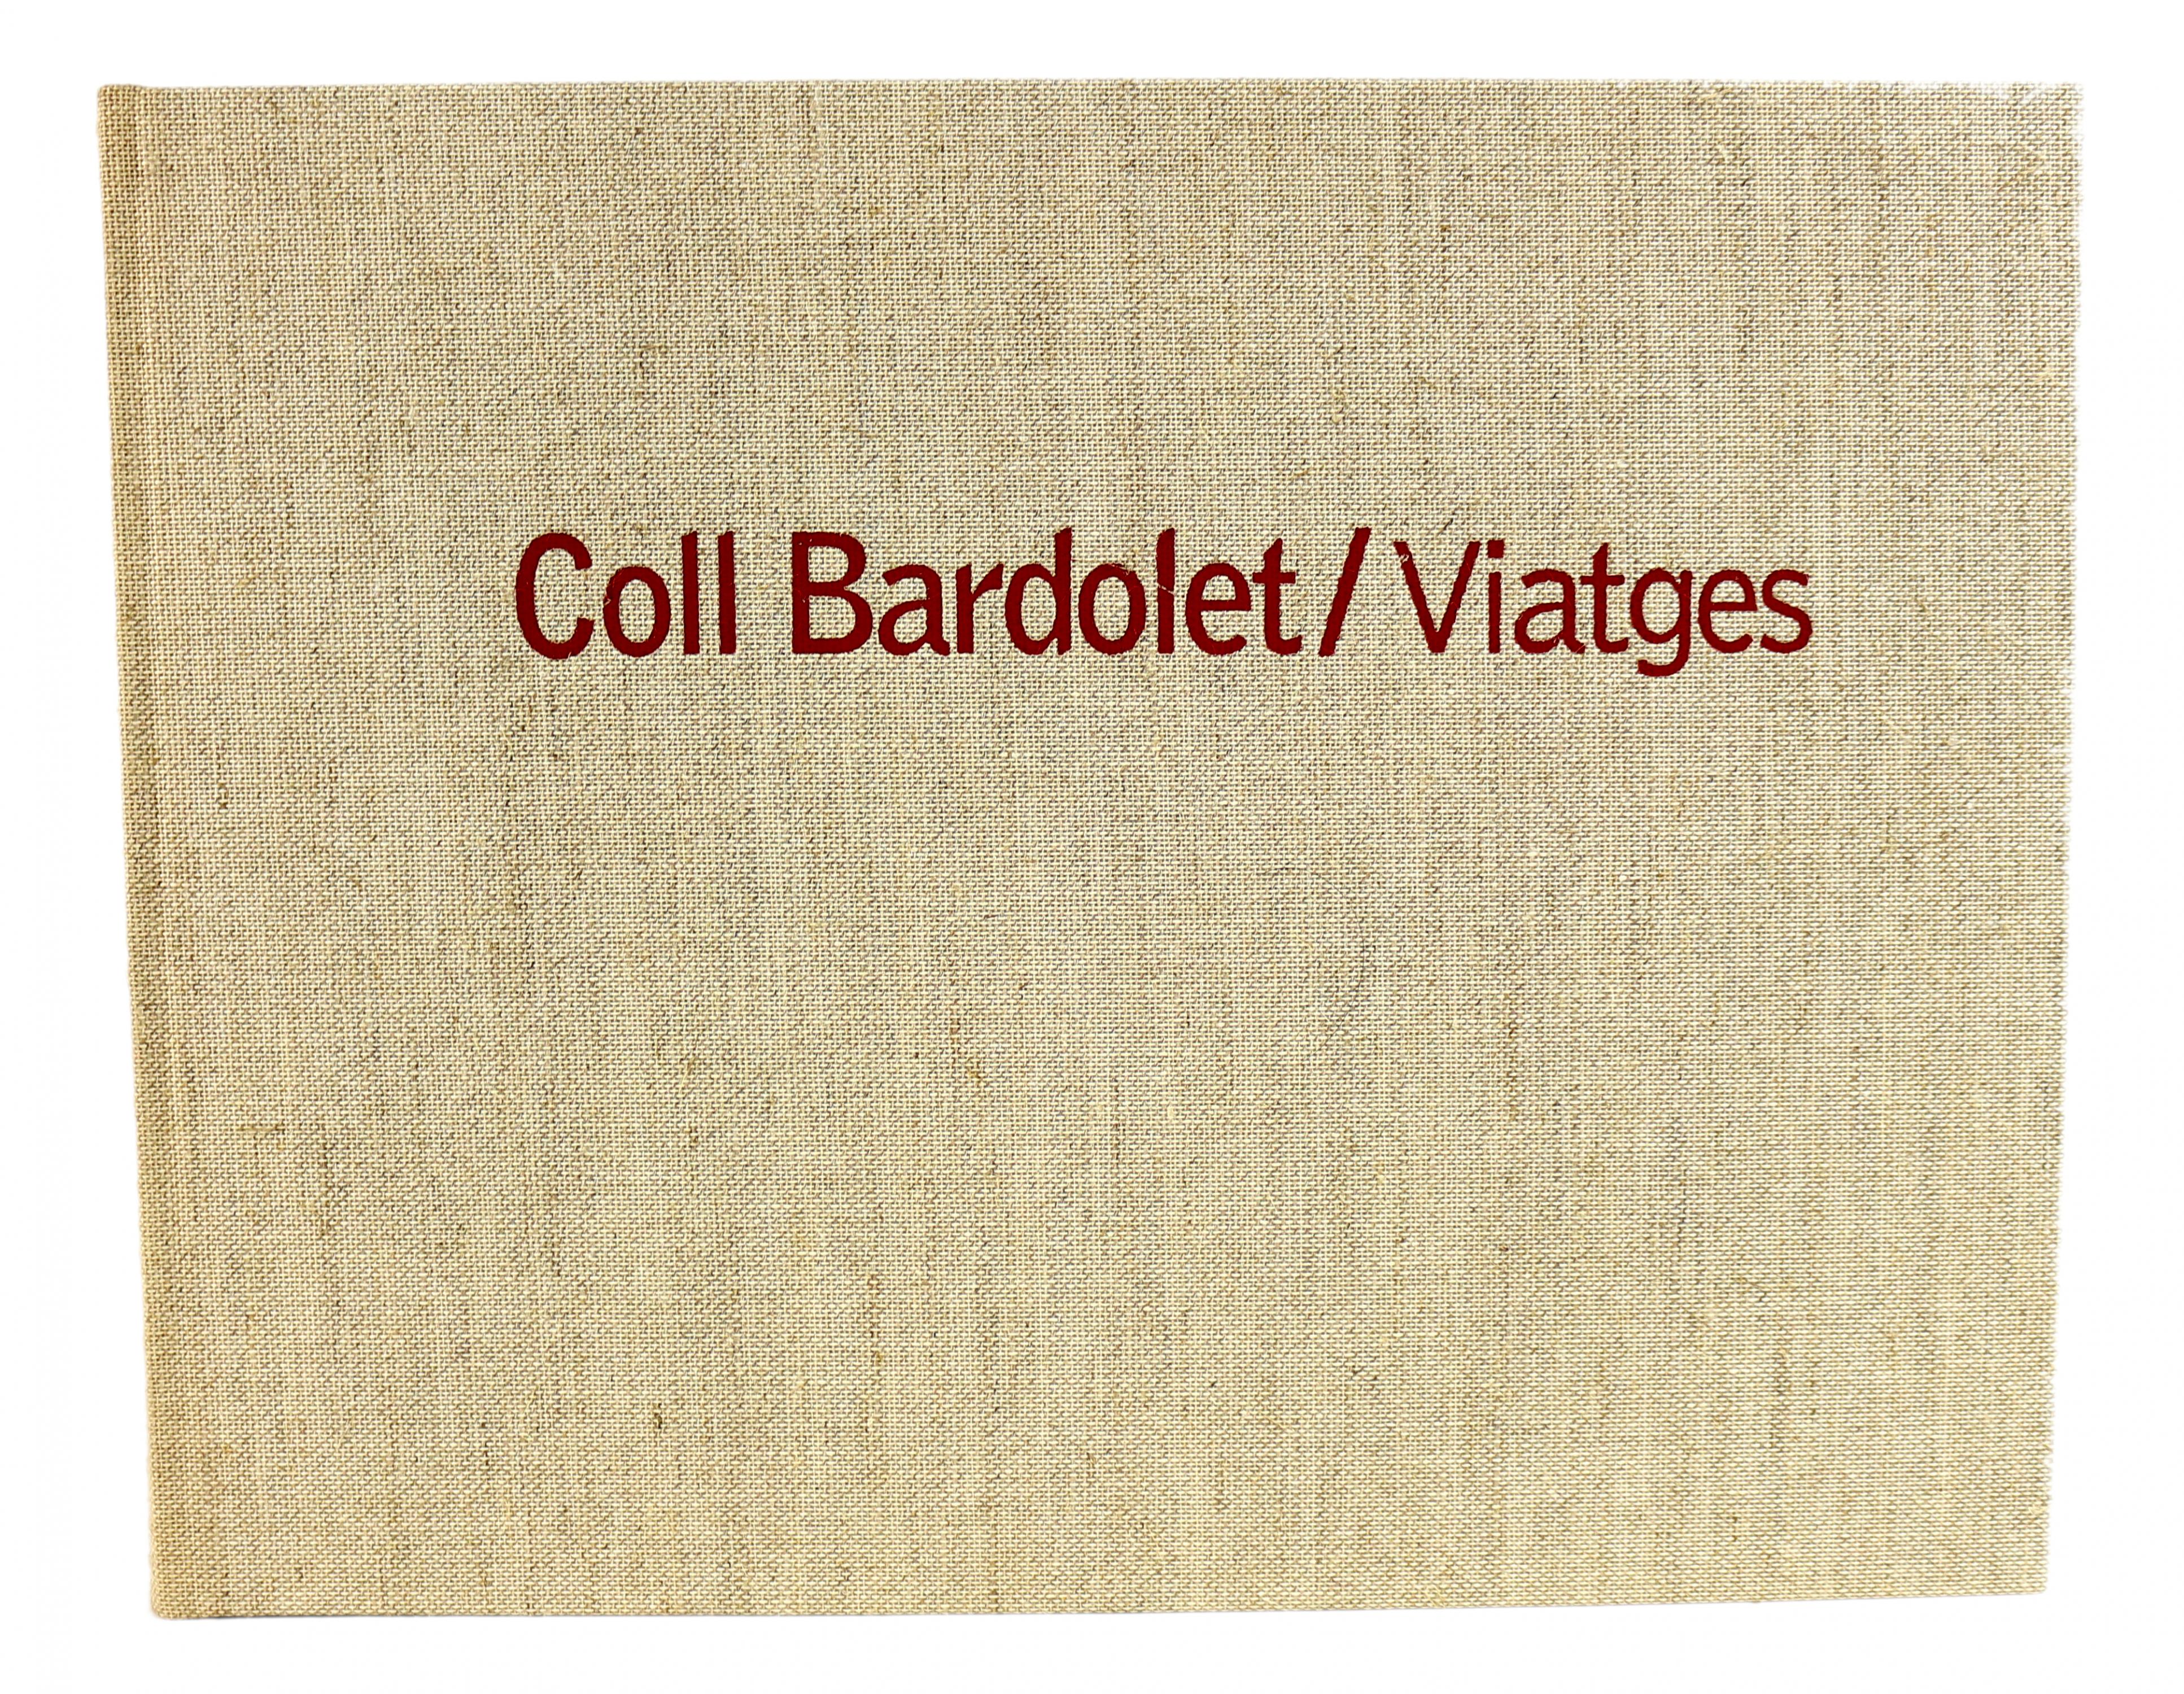 "COLL BARDOLET / VIATGES"